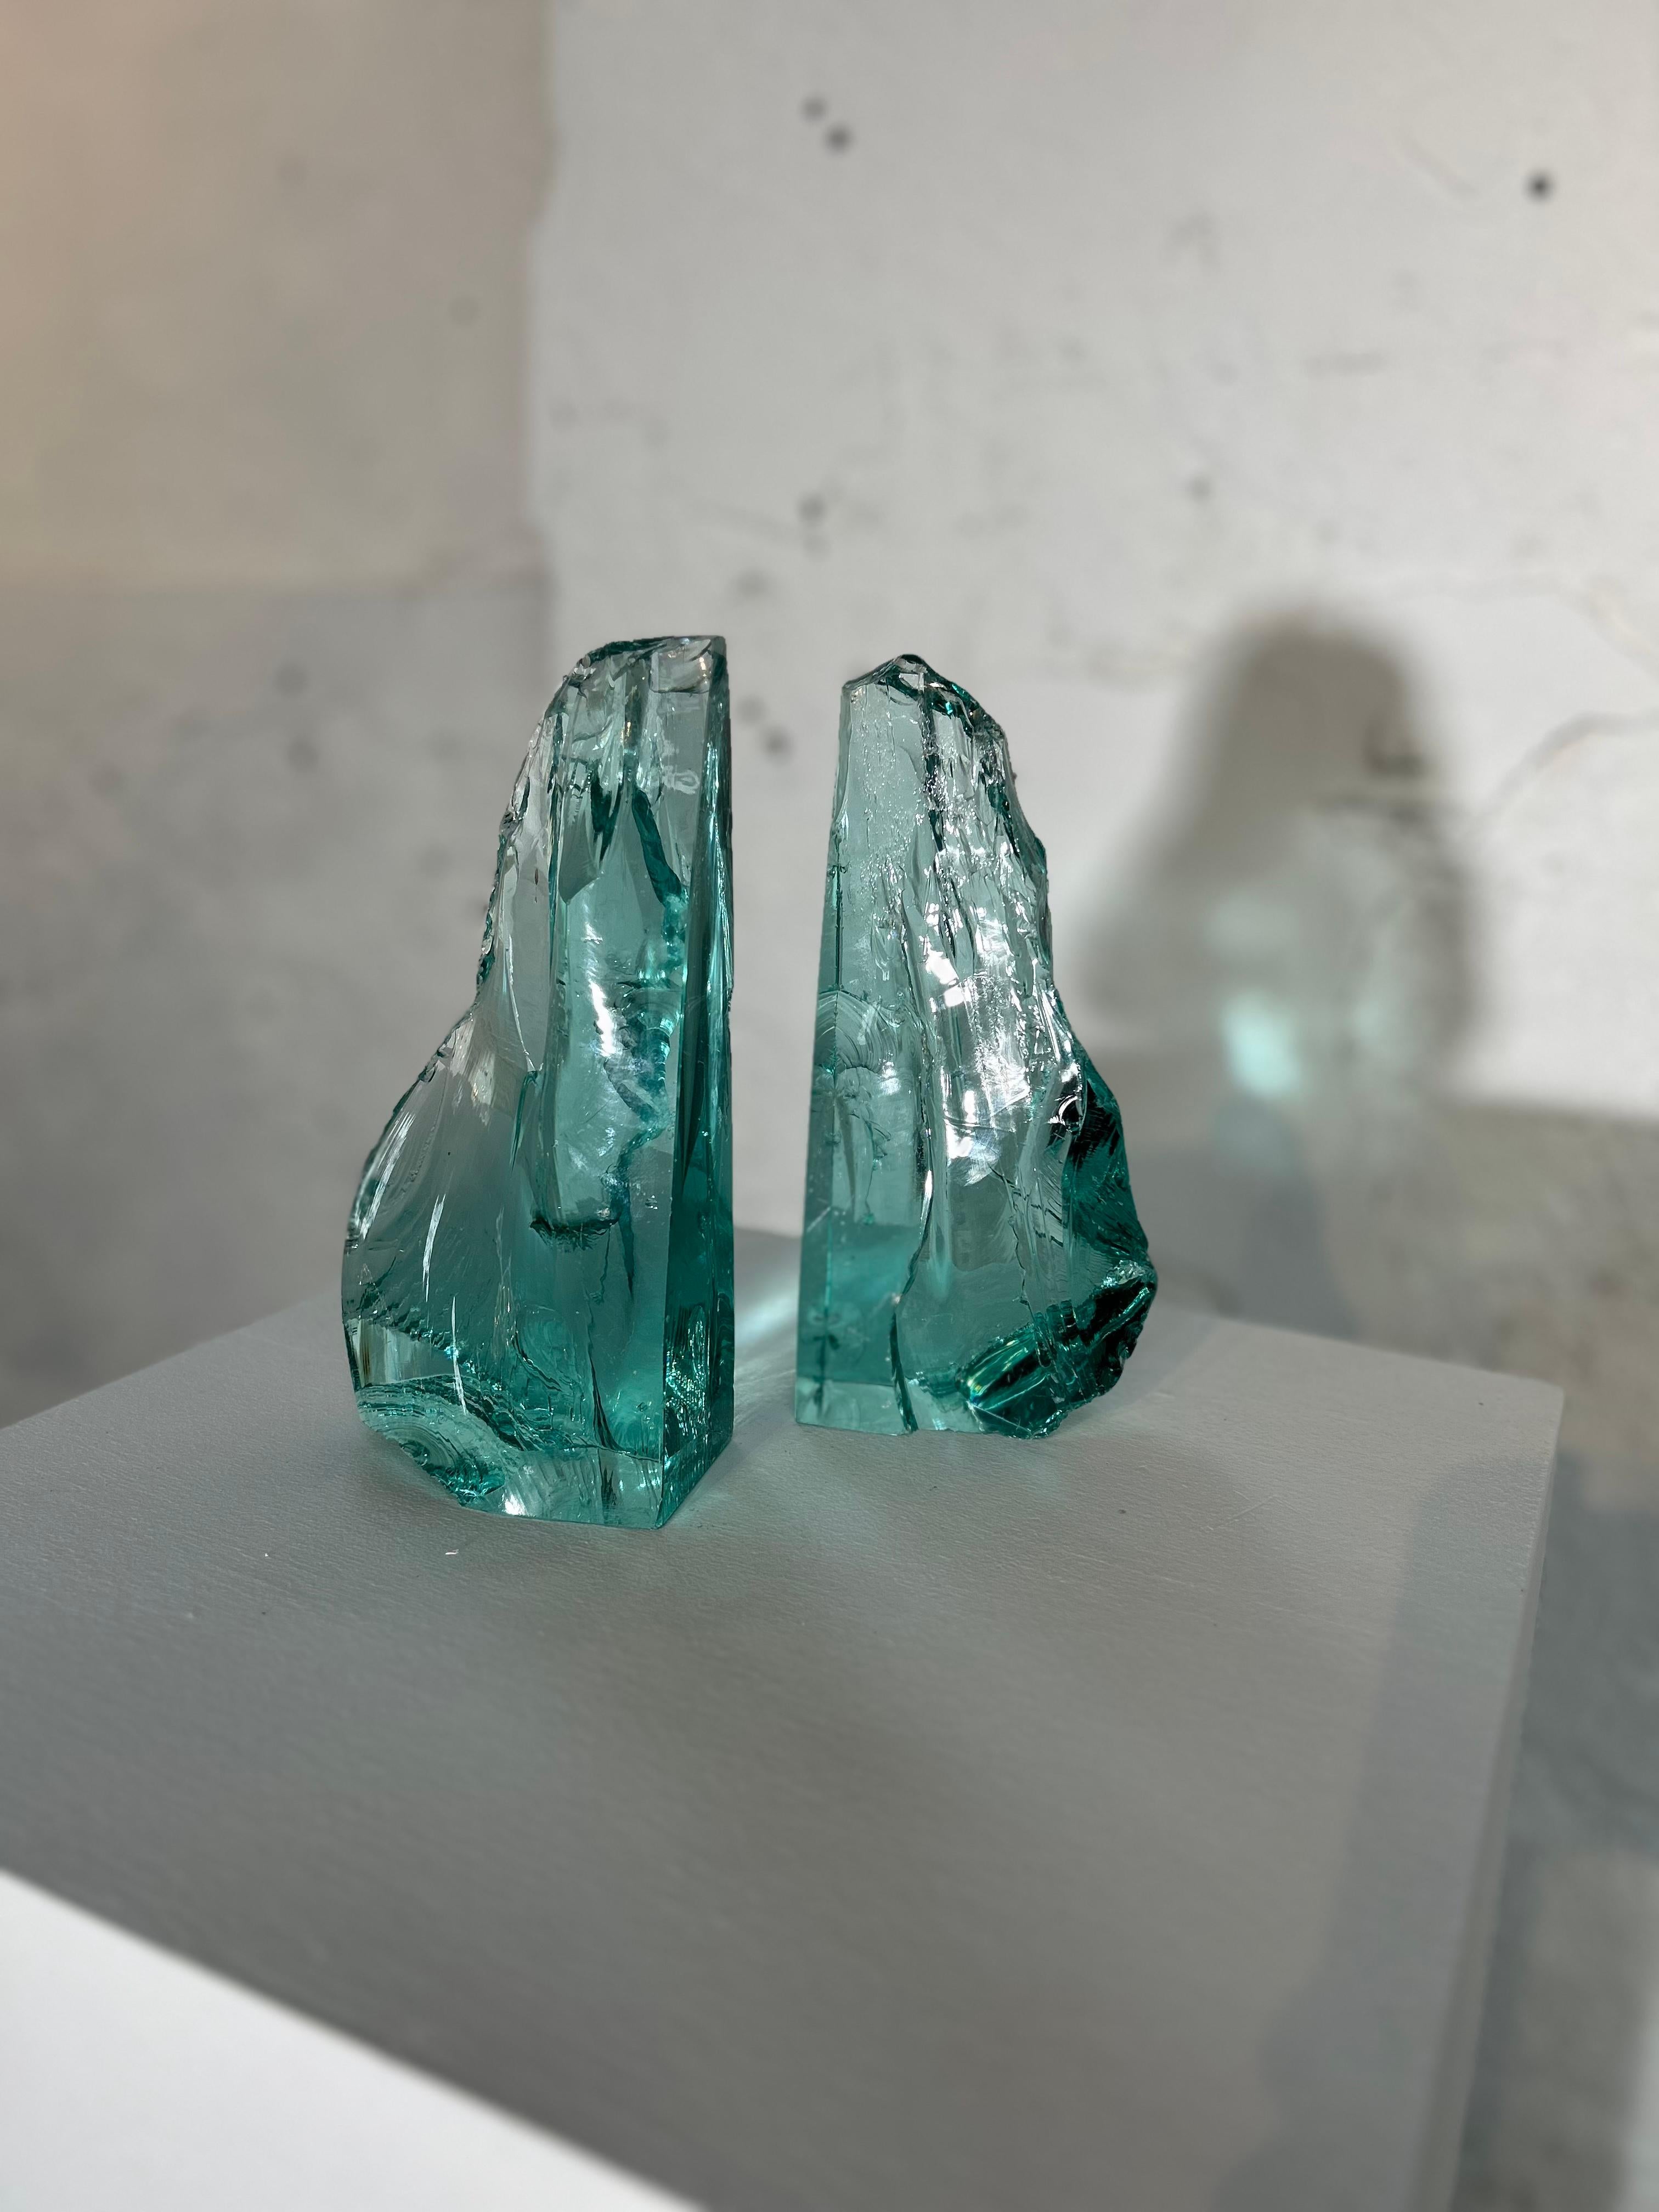 Fontana Arte - Paar Glas-Buchstützen
Ein Paar Buchstützen-Skulpturen von Fontana Arte aus dickem Glas, mit einer Zange bearbeitet.
um 1960
Höhe 23 cm
Breite 12 cm